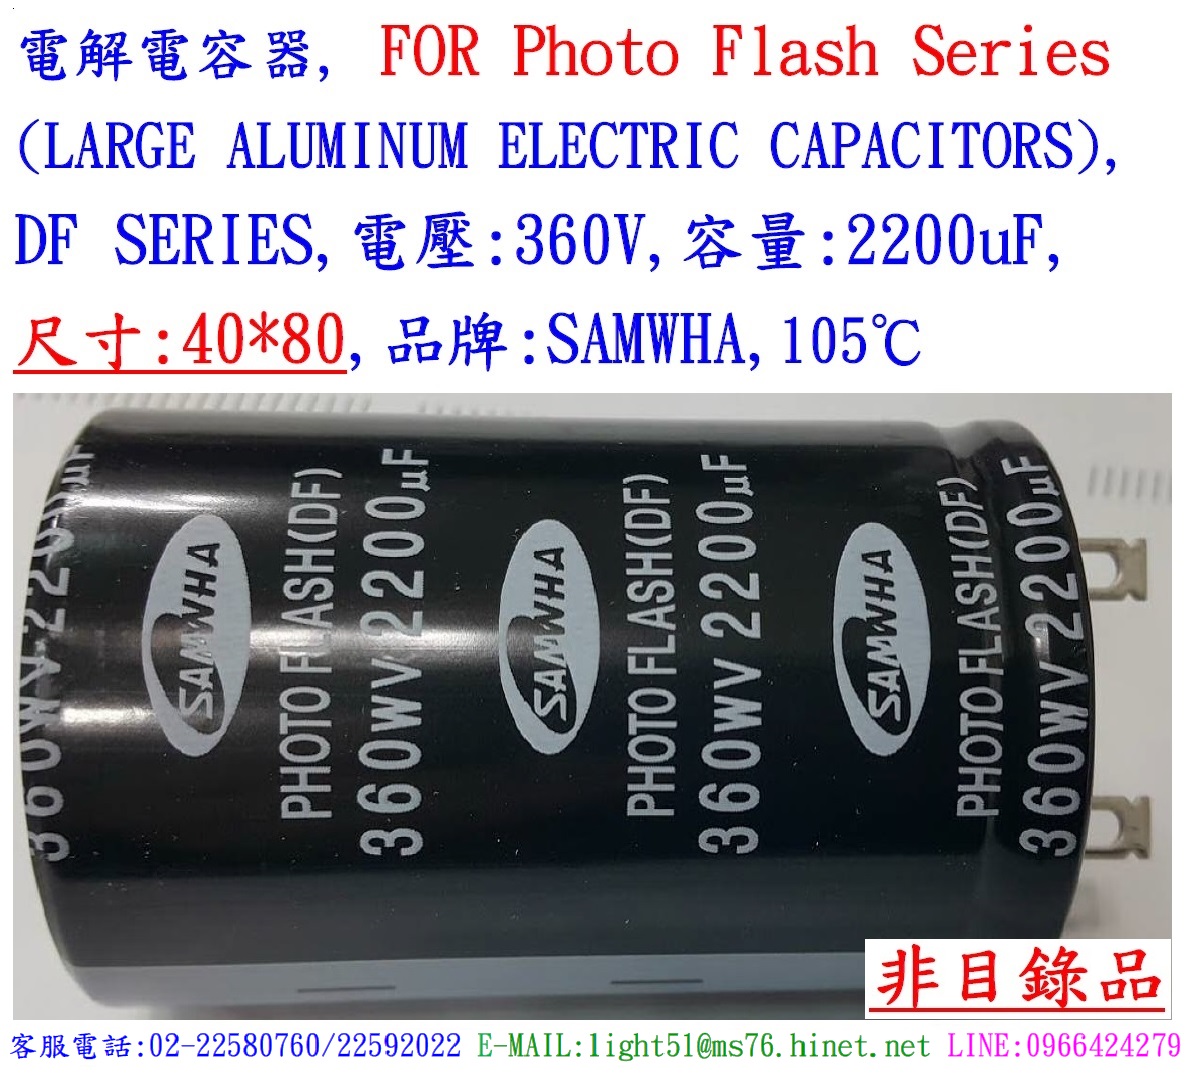 DF,360V,2200uF,尺寸40*80,電解電容器(Photo Flash),SAMWAH